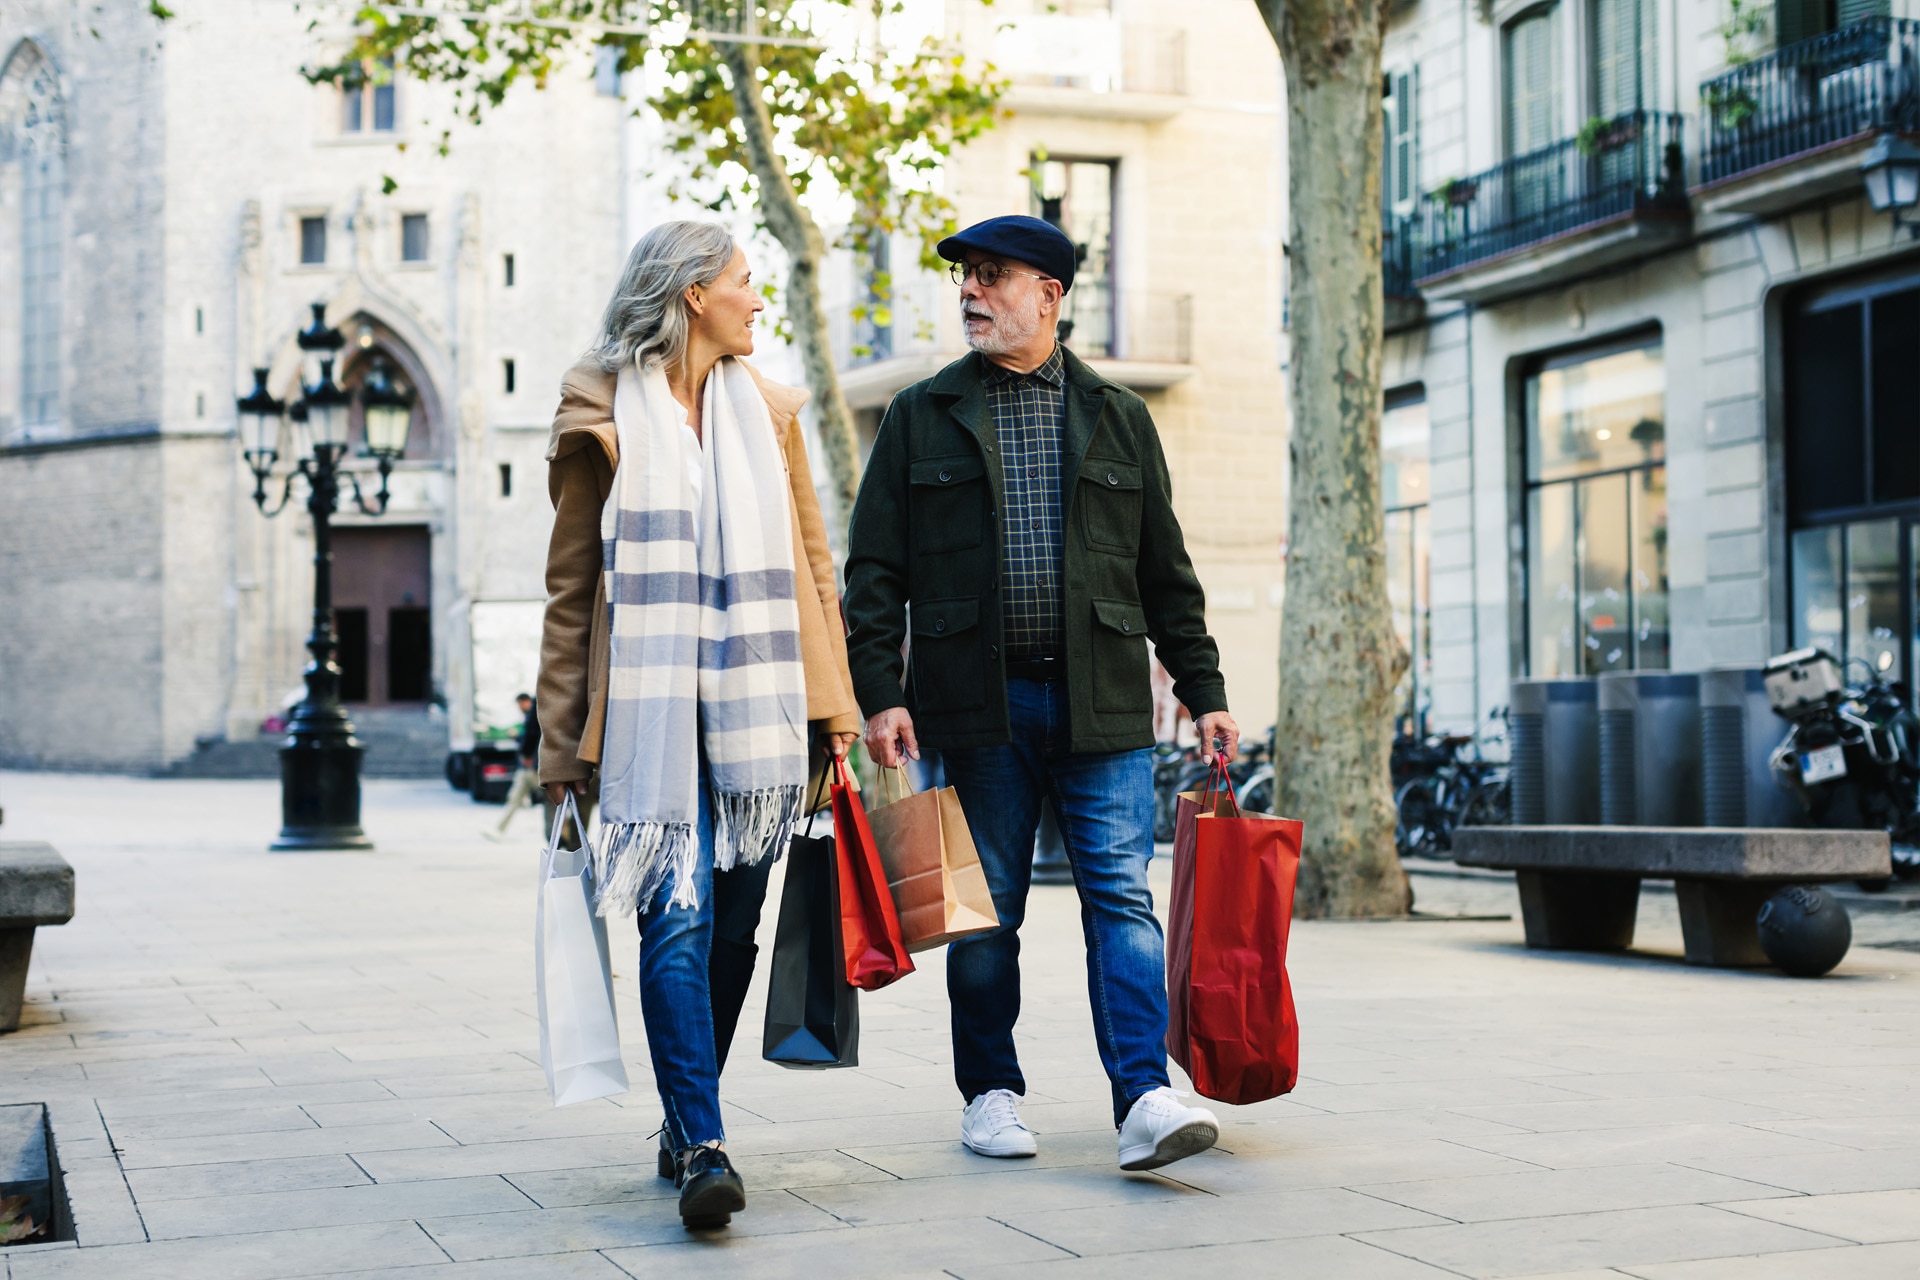 Äldre par som håller i shoppingkassar promenerar på en gata under vintern.